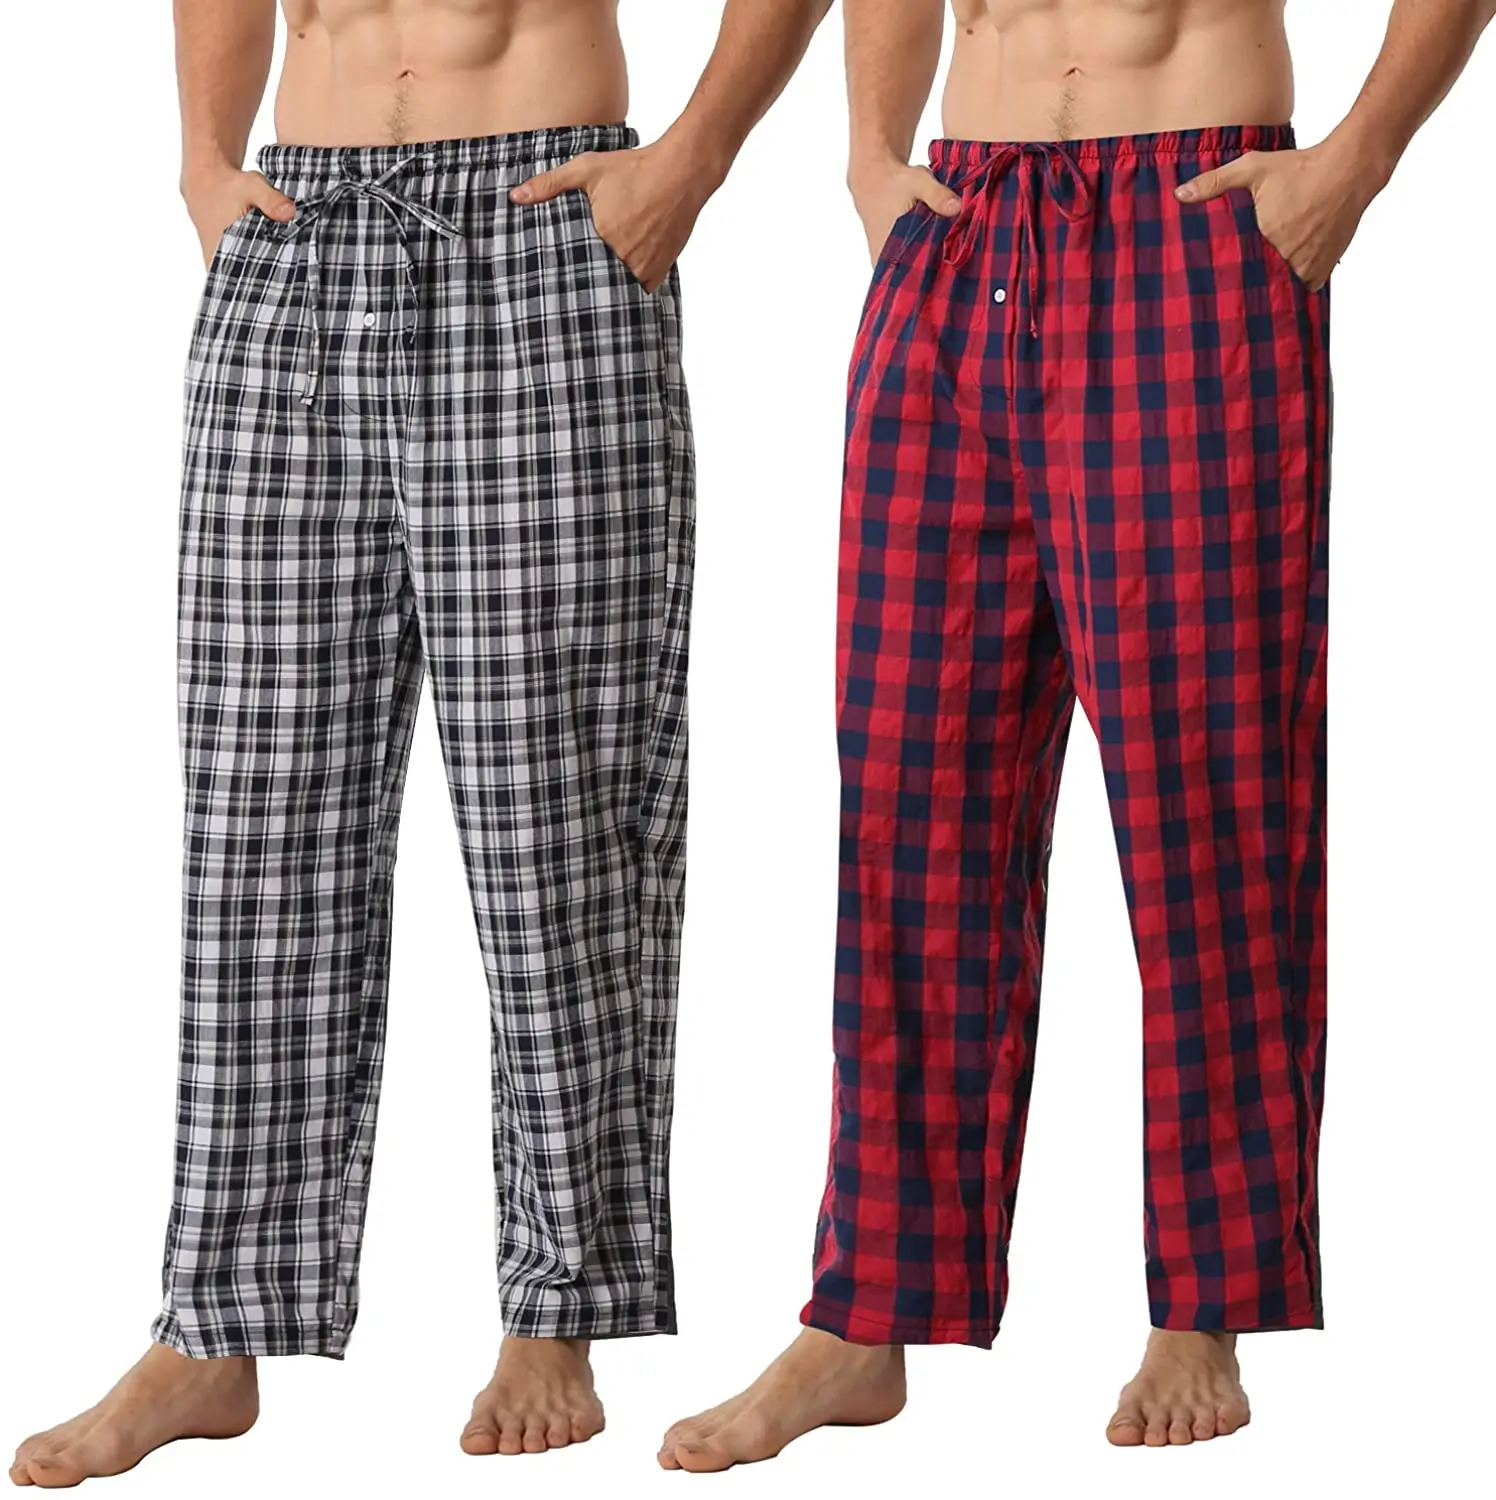 Mens Pyjamas Lounge Pants Cotton mix Bottoms Trousers Nightwear Pjs Sleepwear 